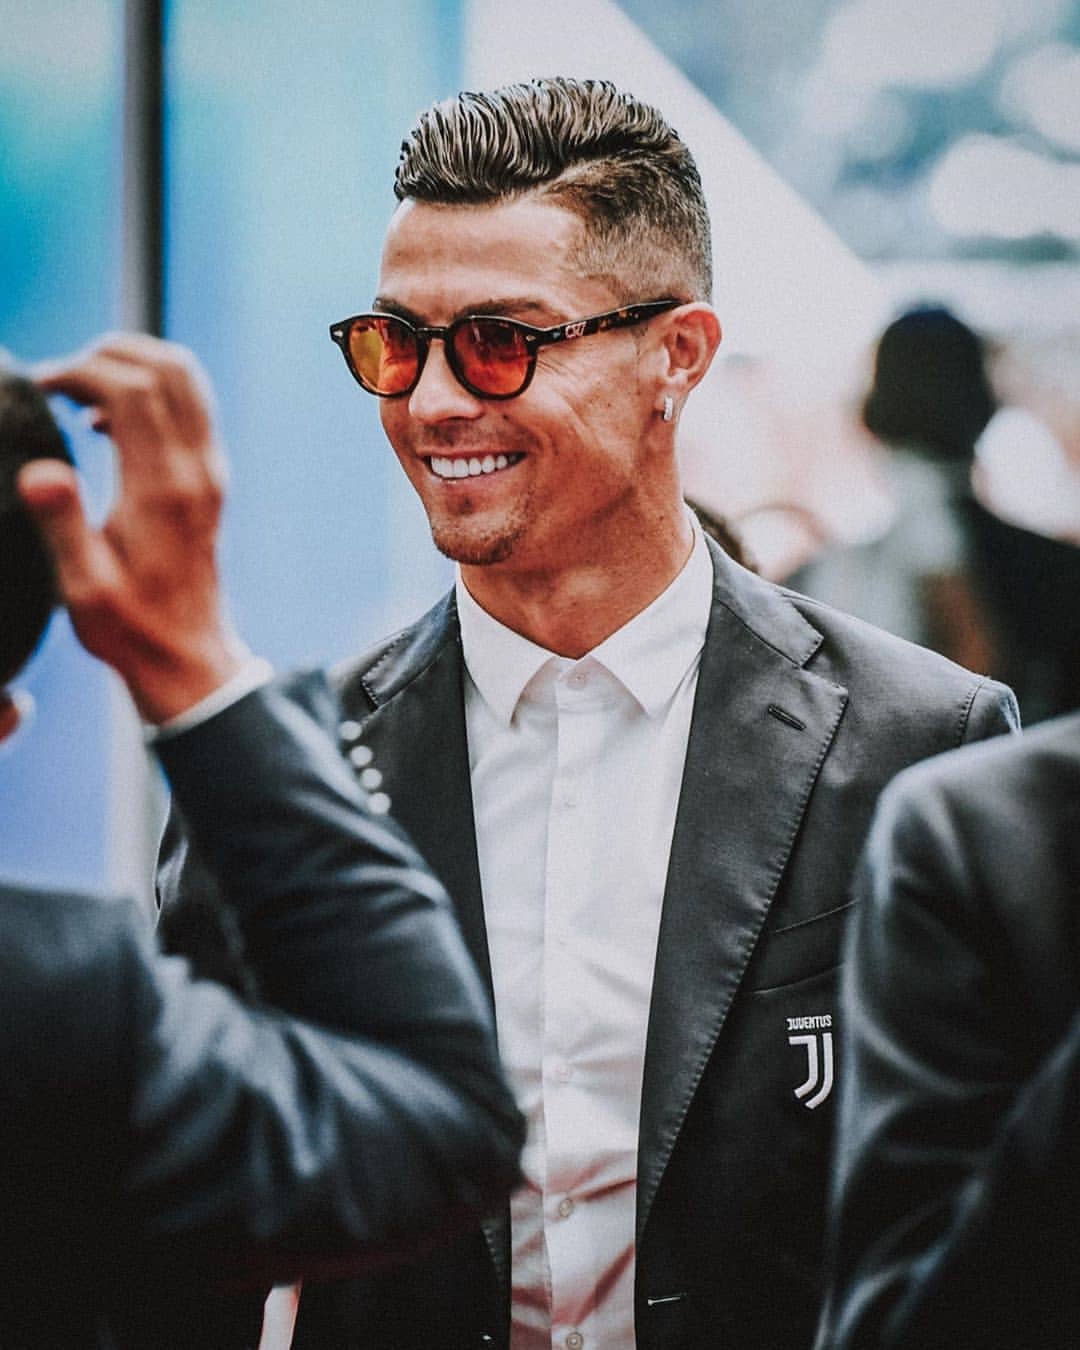 Sử dụng hình nền Ronaldo để tăng động lực cho ngày mới bắt đầu. Bức ảnh sẽ giúp bạn cảm thấy năng động và đầy sức sống từ phong cách và năng lượng sống của siêu sao bóng đá này.